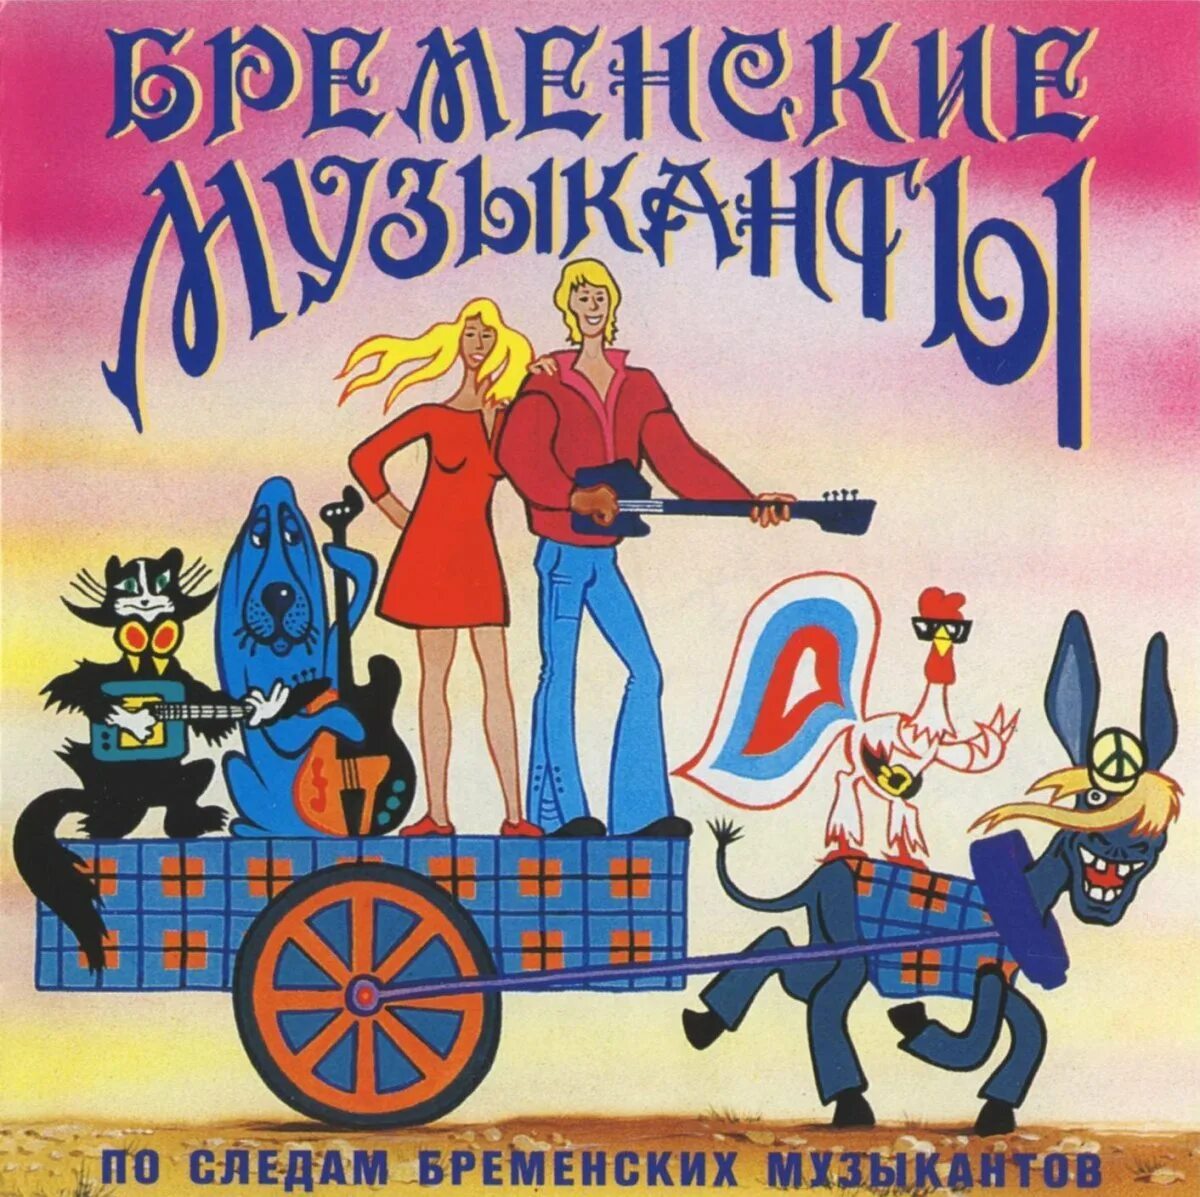 Бременские музыканты в качестве. Бременские музыканты 1969 диск. Бременские музыканты 1973 Трубадур.